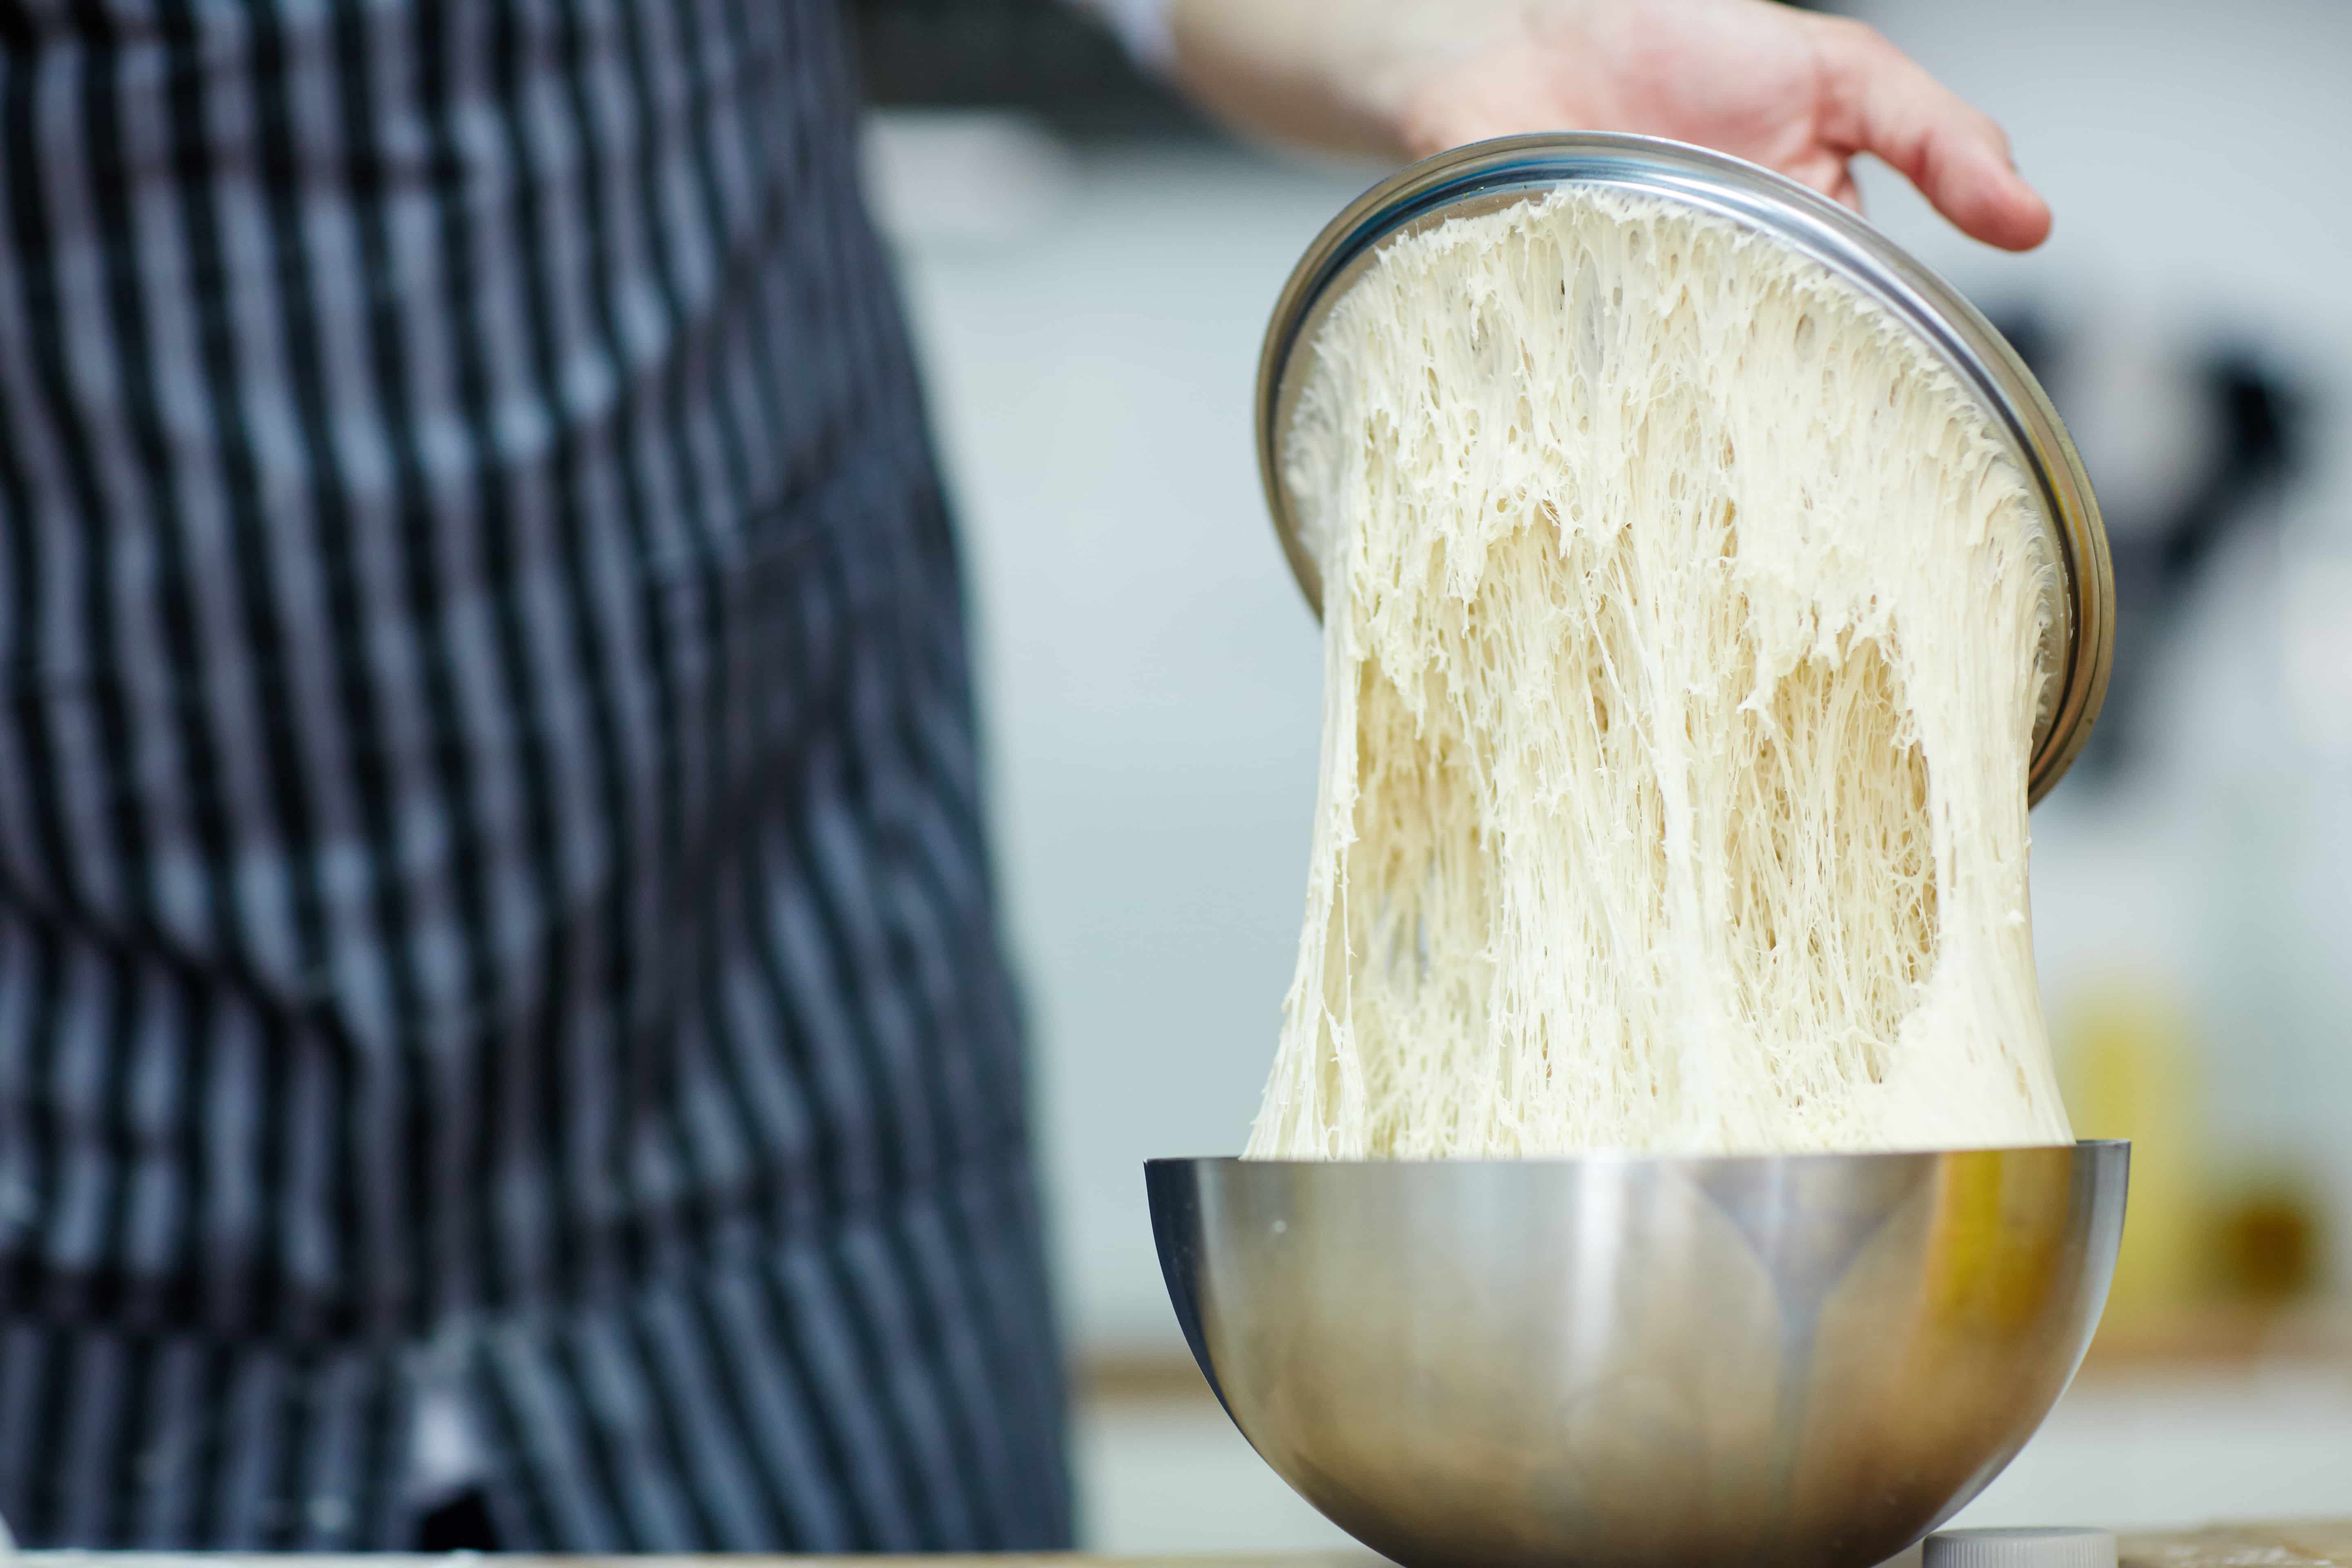 Хлеб из цельнозерновой муки в духовке - рецепт с пошаговым приготовлением